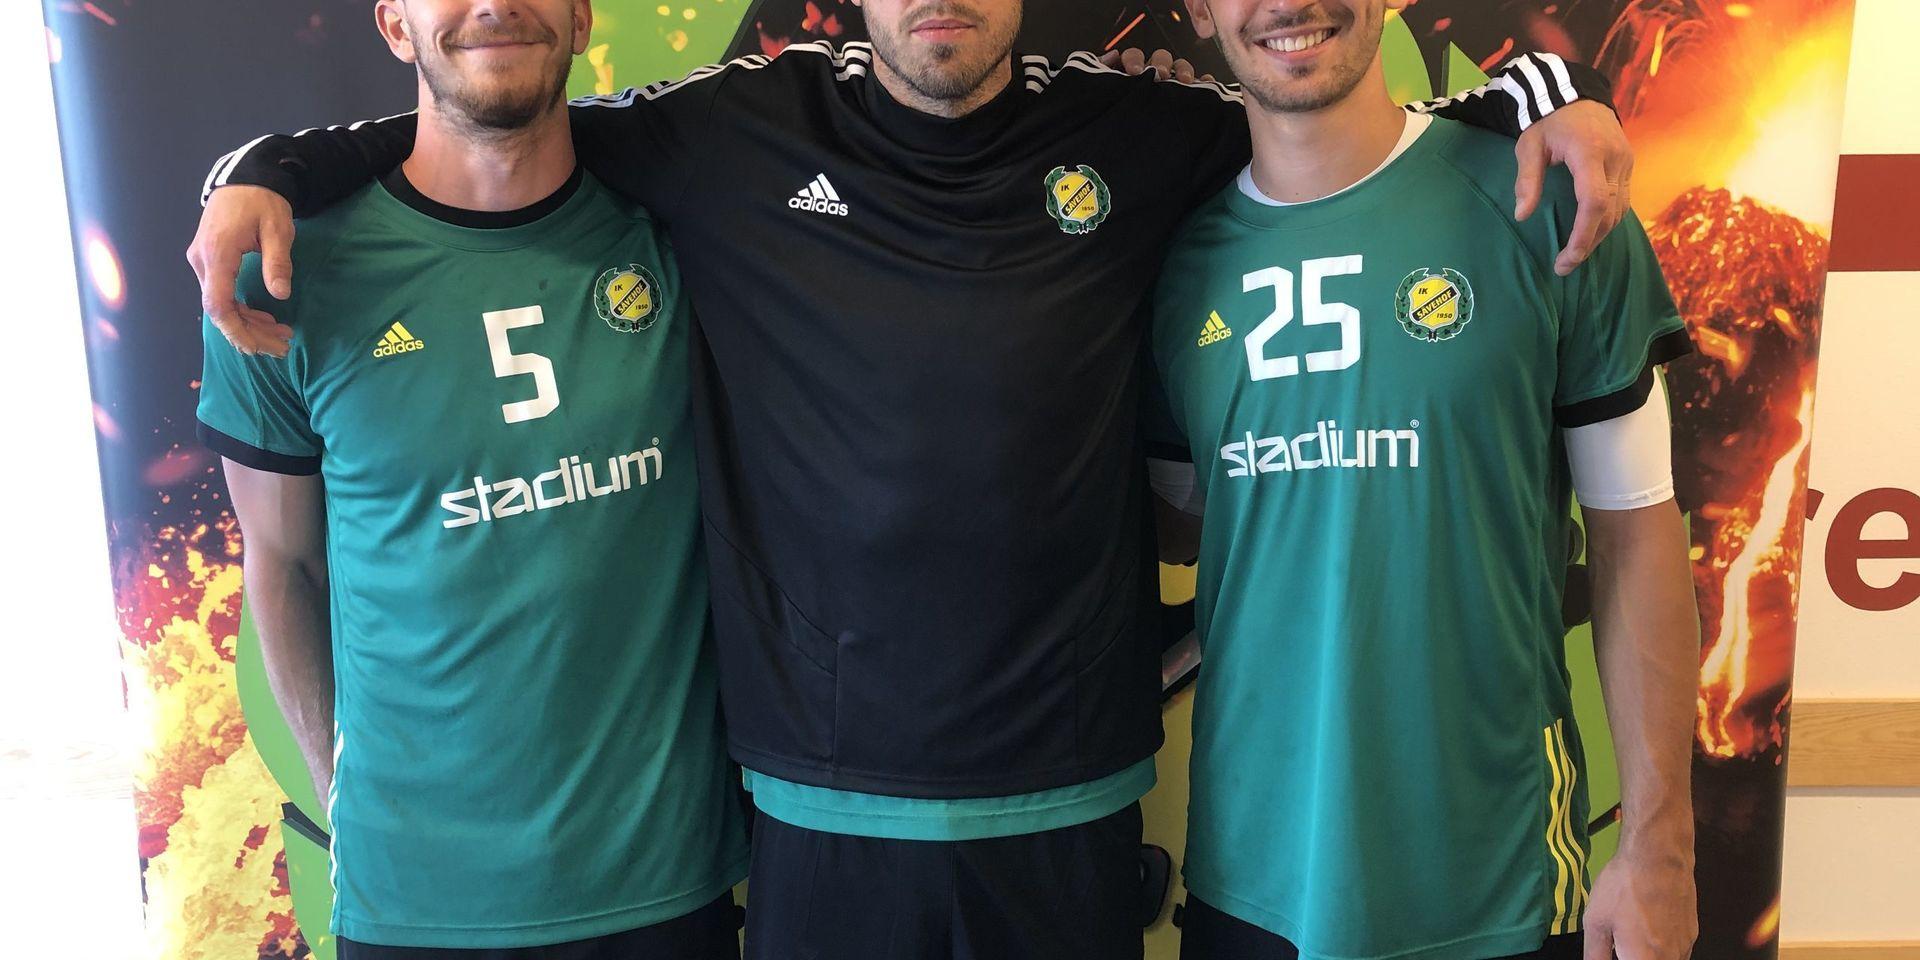 András Koncz och Stefan Sunajko tillsammans med Jonas Larholm på plats i Partille Arena inför träning under torsdagen. 